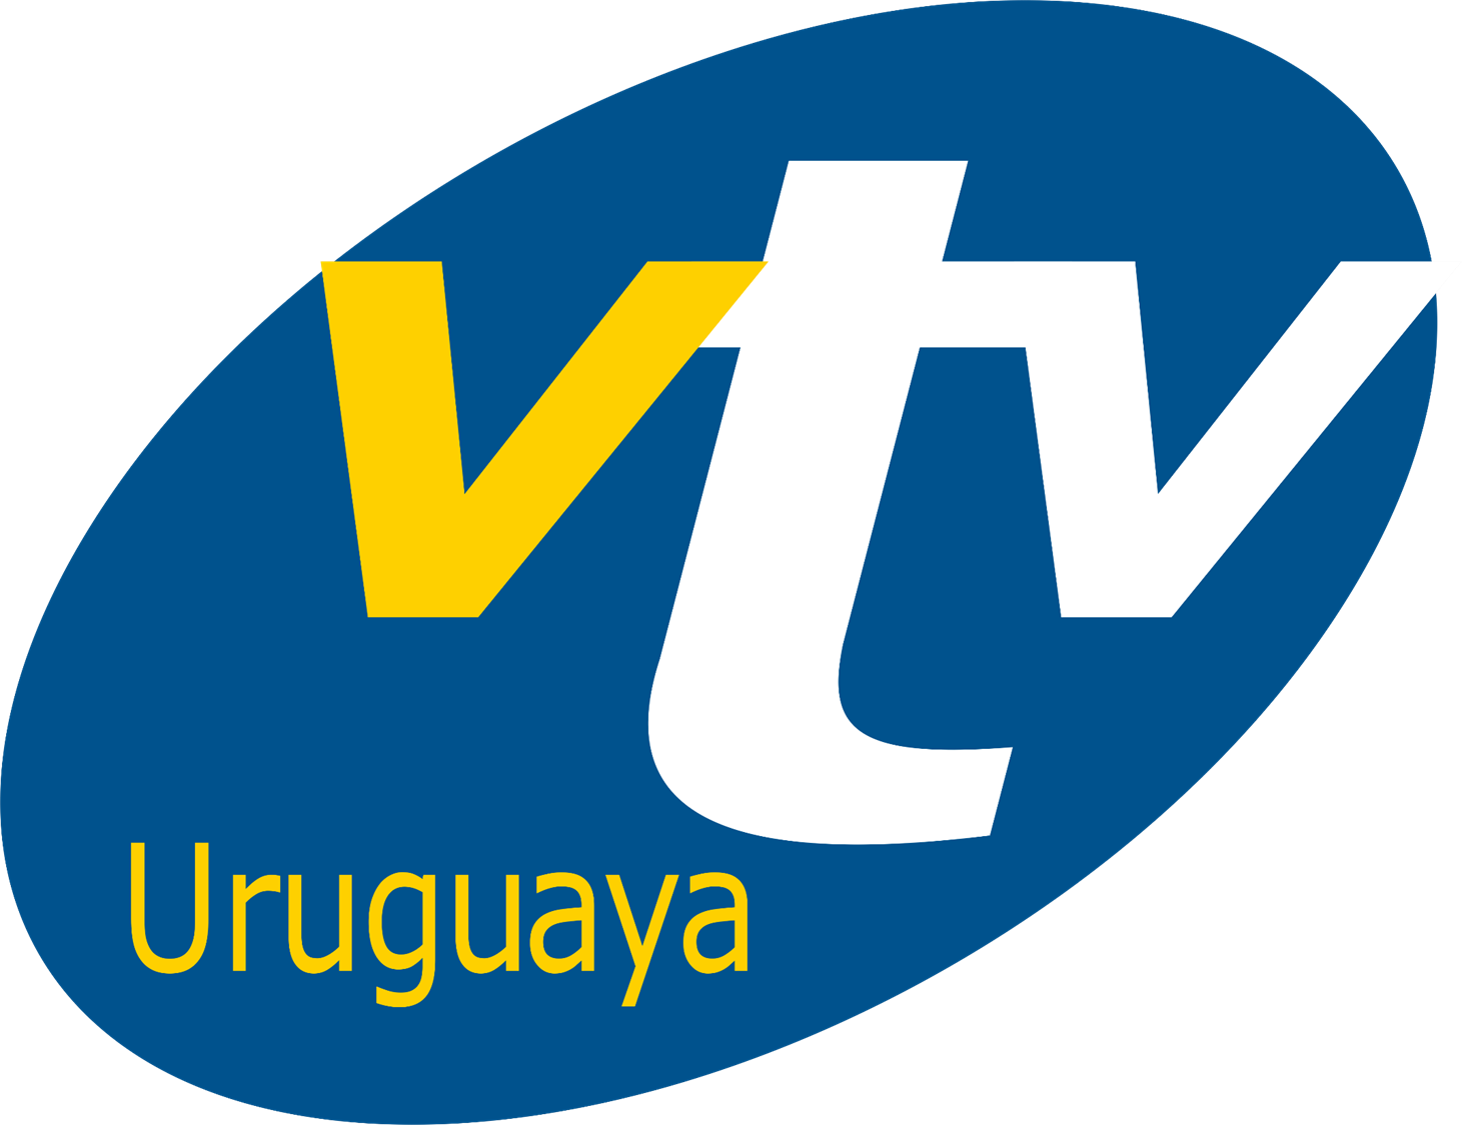 URY VTV HD ᴾʳᶦᵐᵉʳᵃ ᵁʳᵘᵍᵘᵃʸ